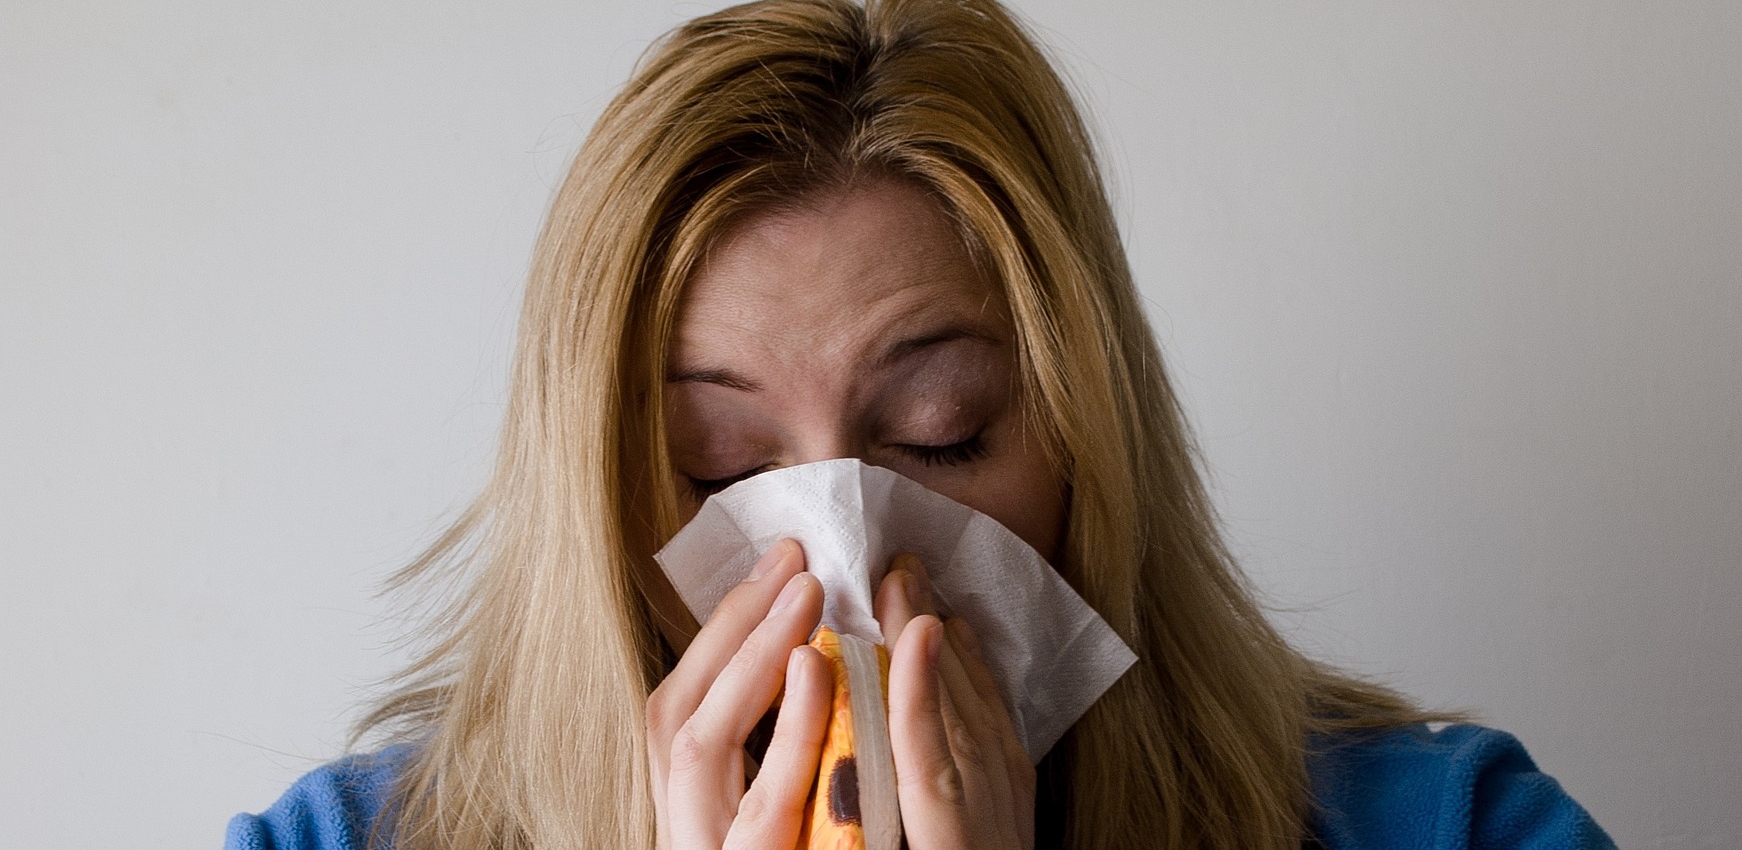 astma to uciążliwa choroba cywilizacyjna niełatwa do wyleczenia